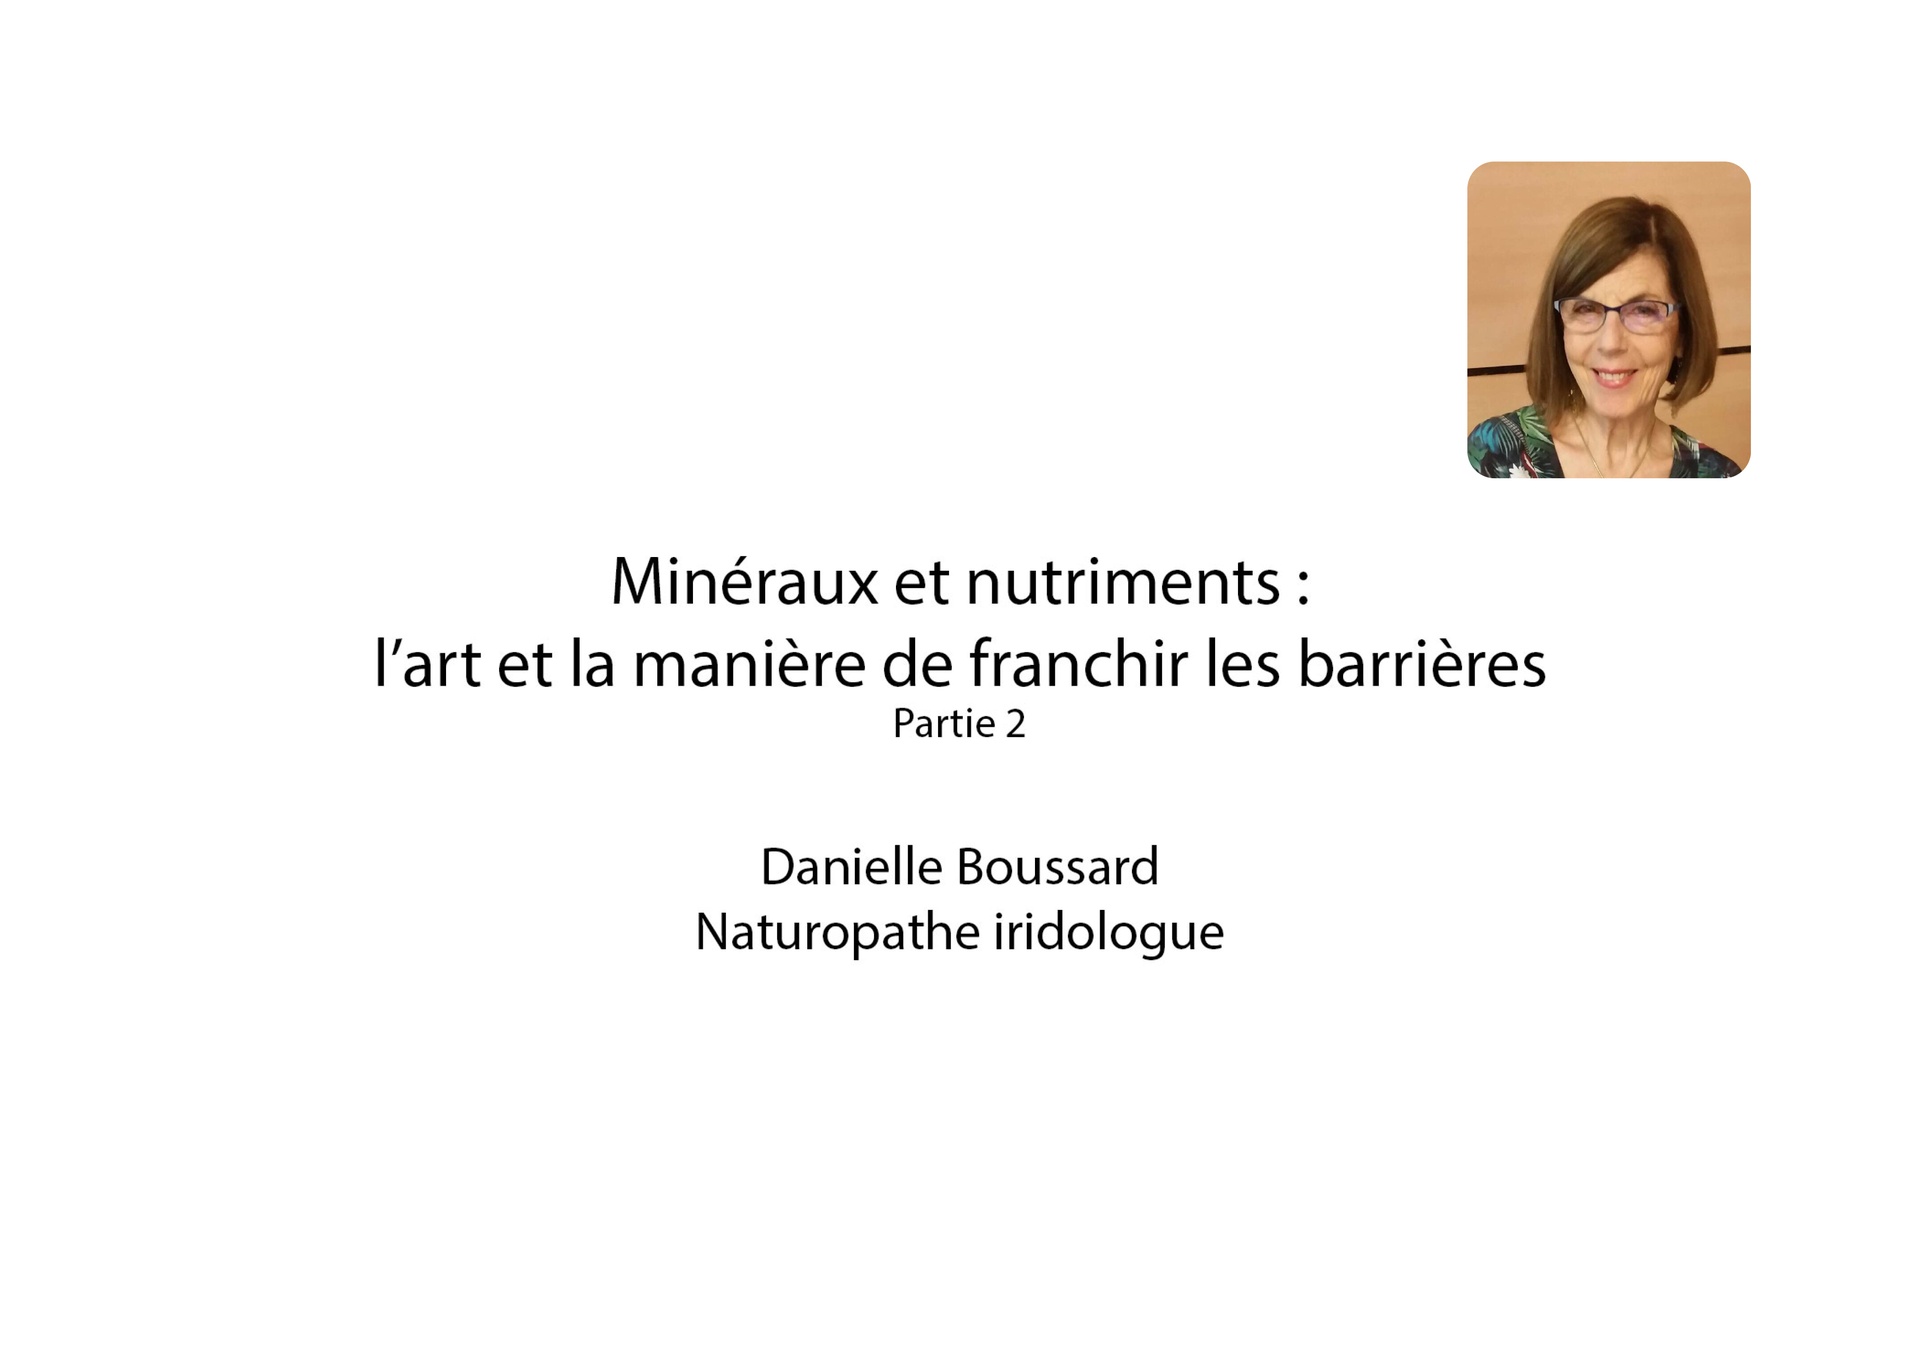 Minéraux et nutriments : l’art et la manière de franchir les barrières - Part 2 - Danielle Boussard